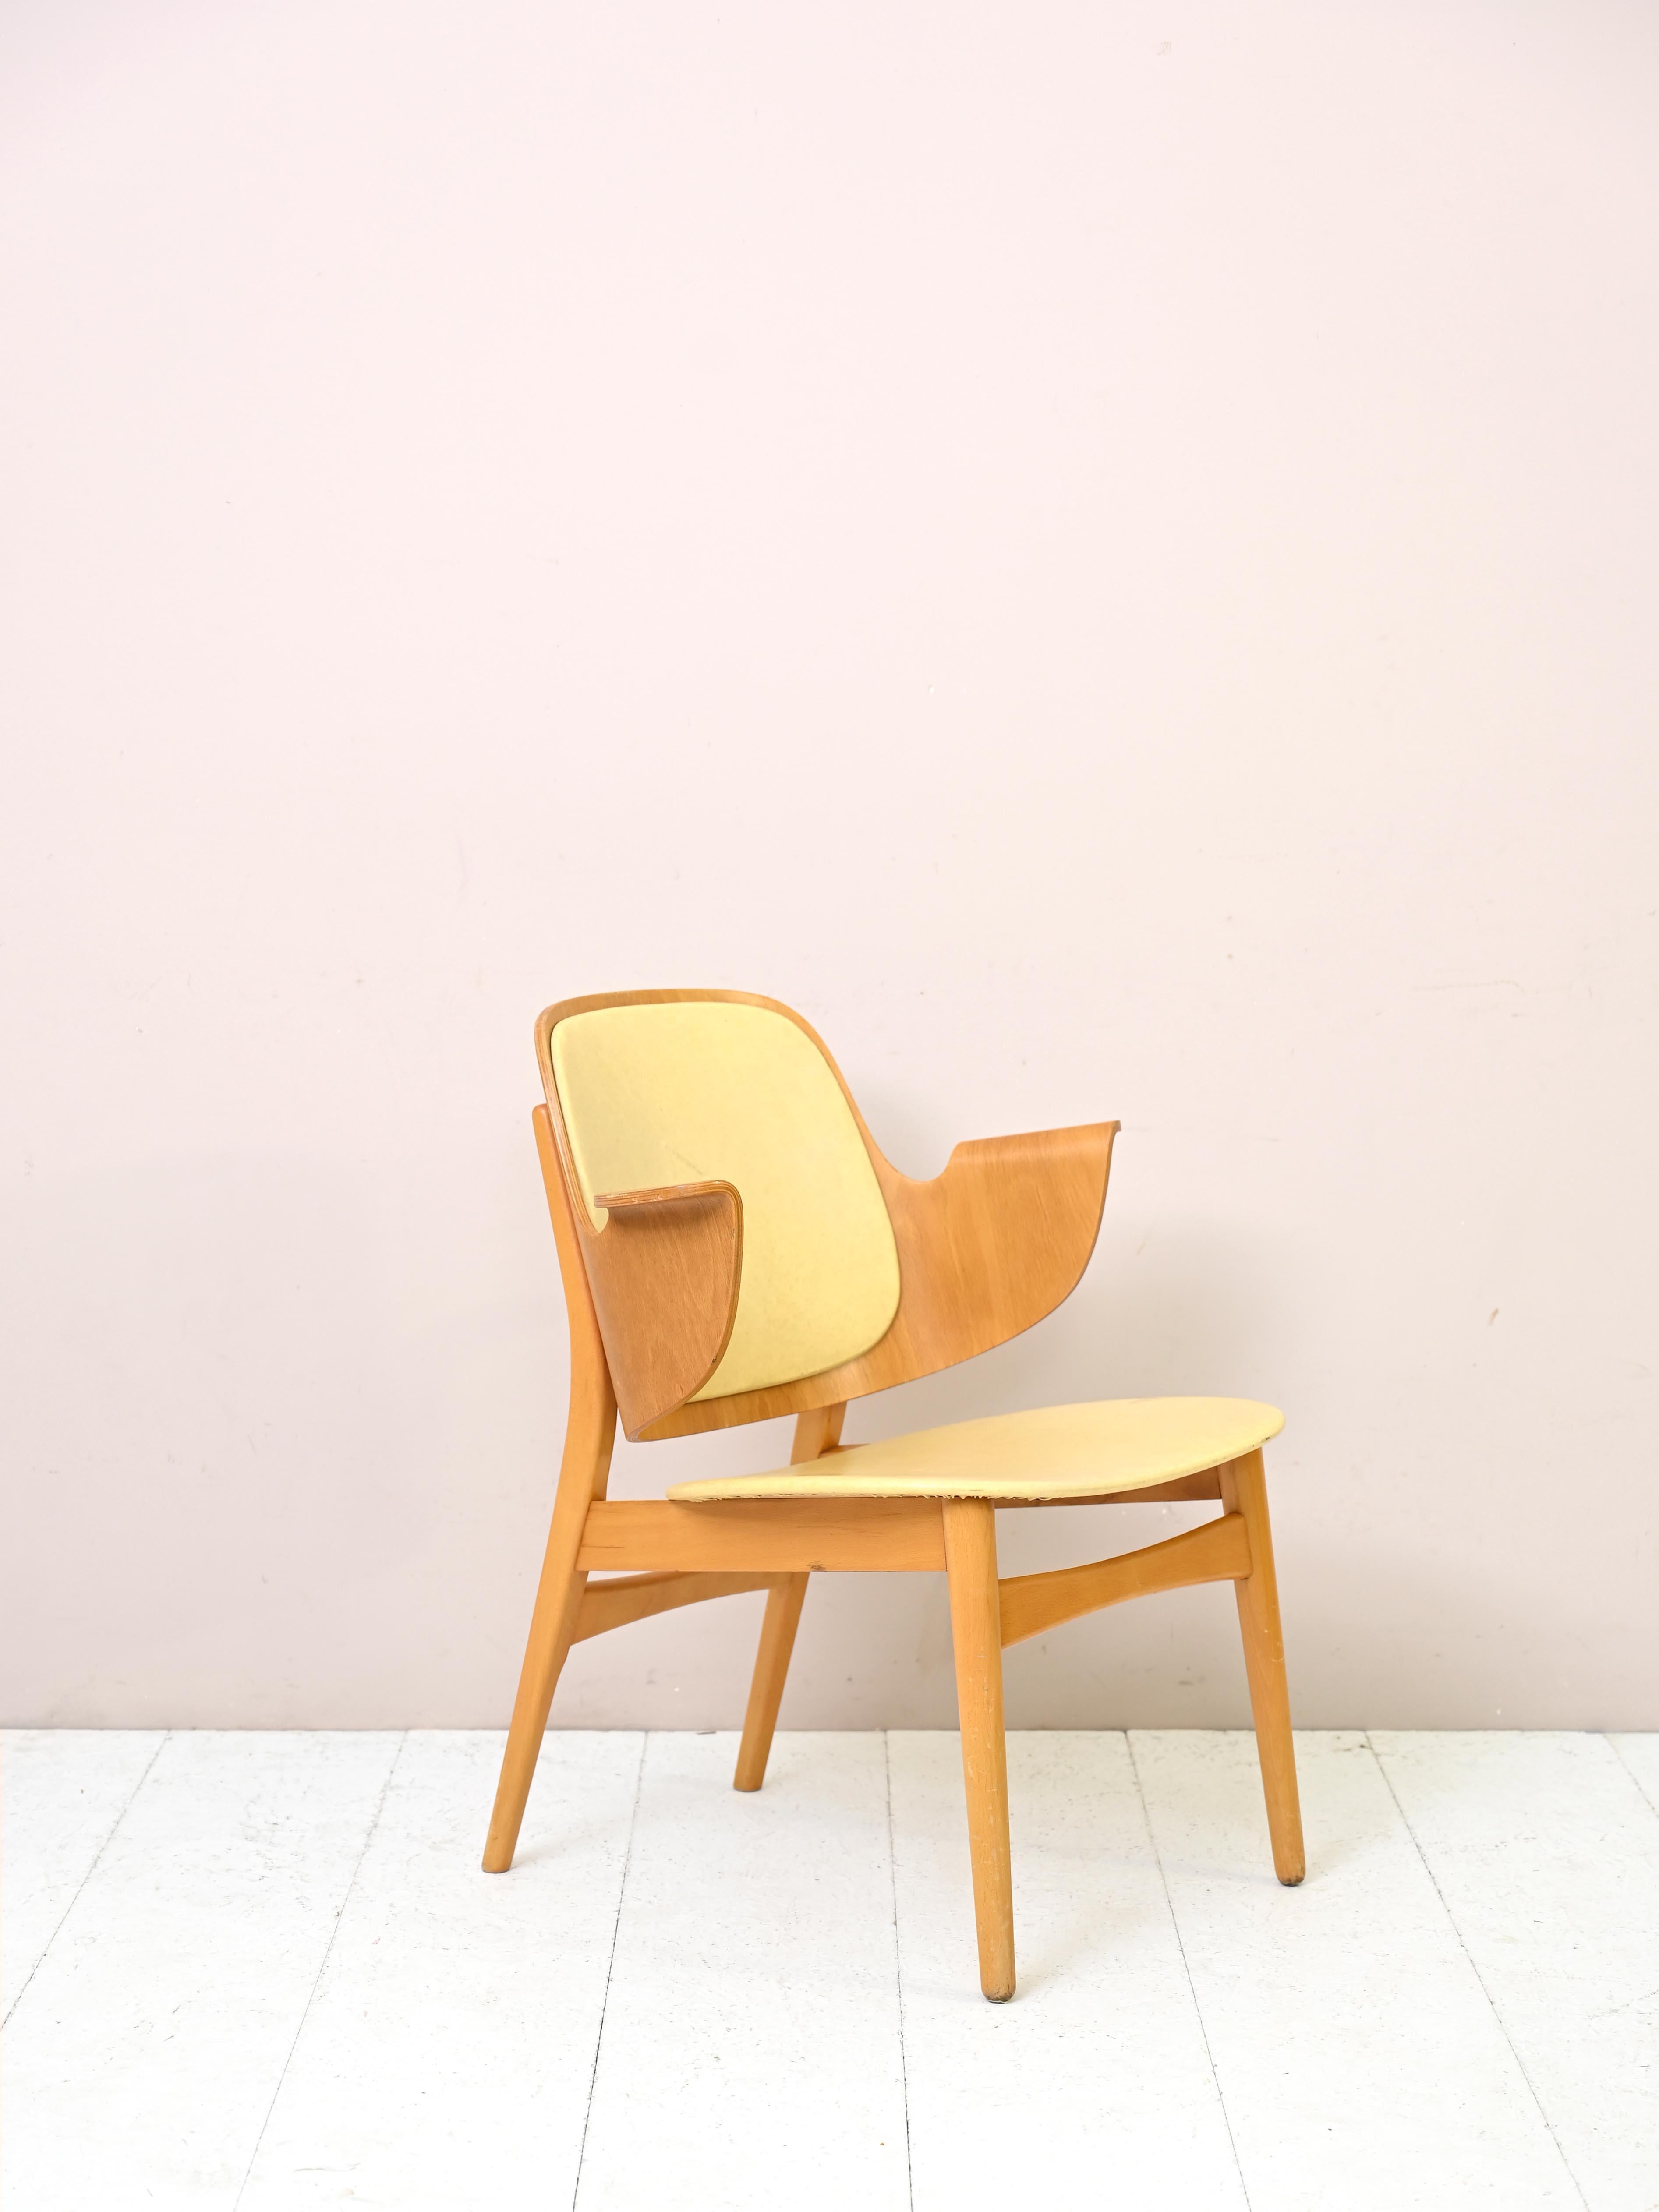 Sessel Modell 107, Vintage, entworfen vom dänischen Designer Hans Olsen.
Ein klassisches dänisches Design: Rückenlehne und Armlehnen bestehen aus einem einzigen Stück geformten Schichtholzes.
Der Sitz und die Rückenlehne sind mit gelbem Kunstleder